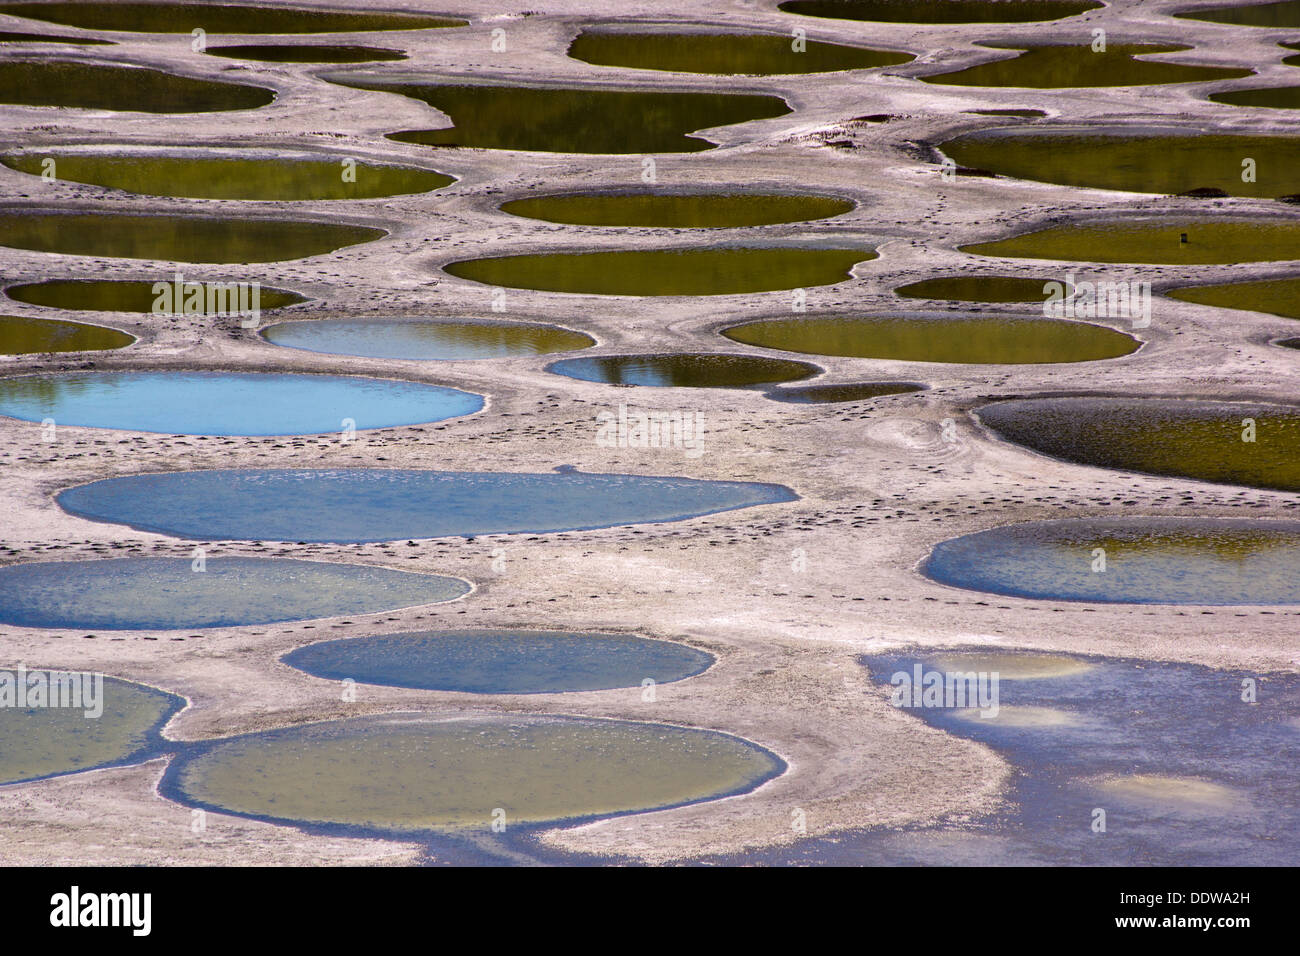 Dettaglio del lago maculato, soluzione salina di un alcale endorheic lago situato a nord-ovest di Osoyoos, regione Okanagan-Similkameen, BC, Canada. Foto Stock